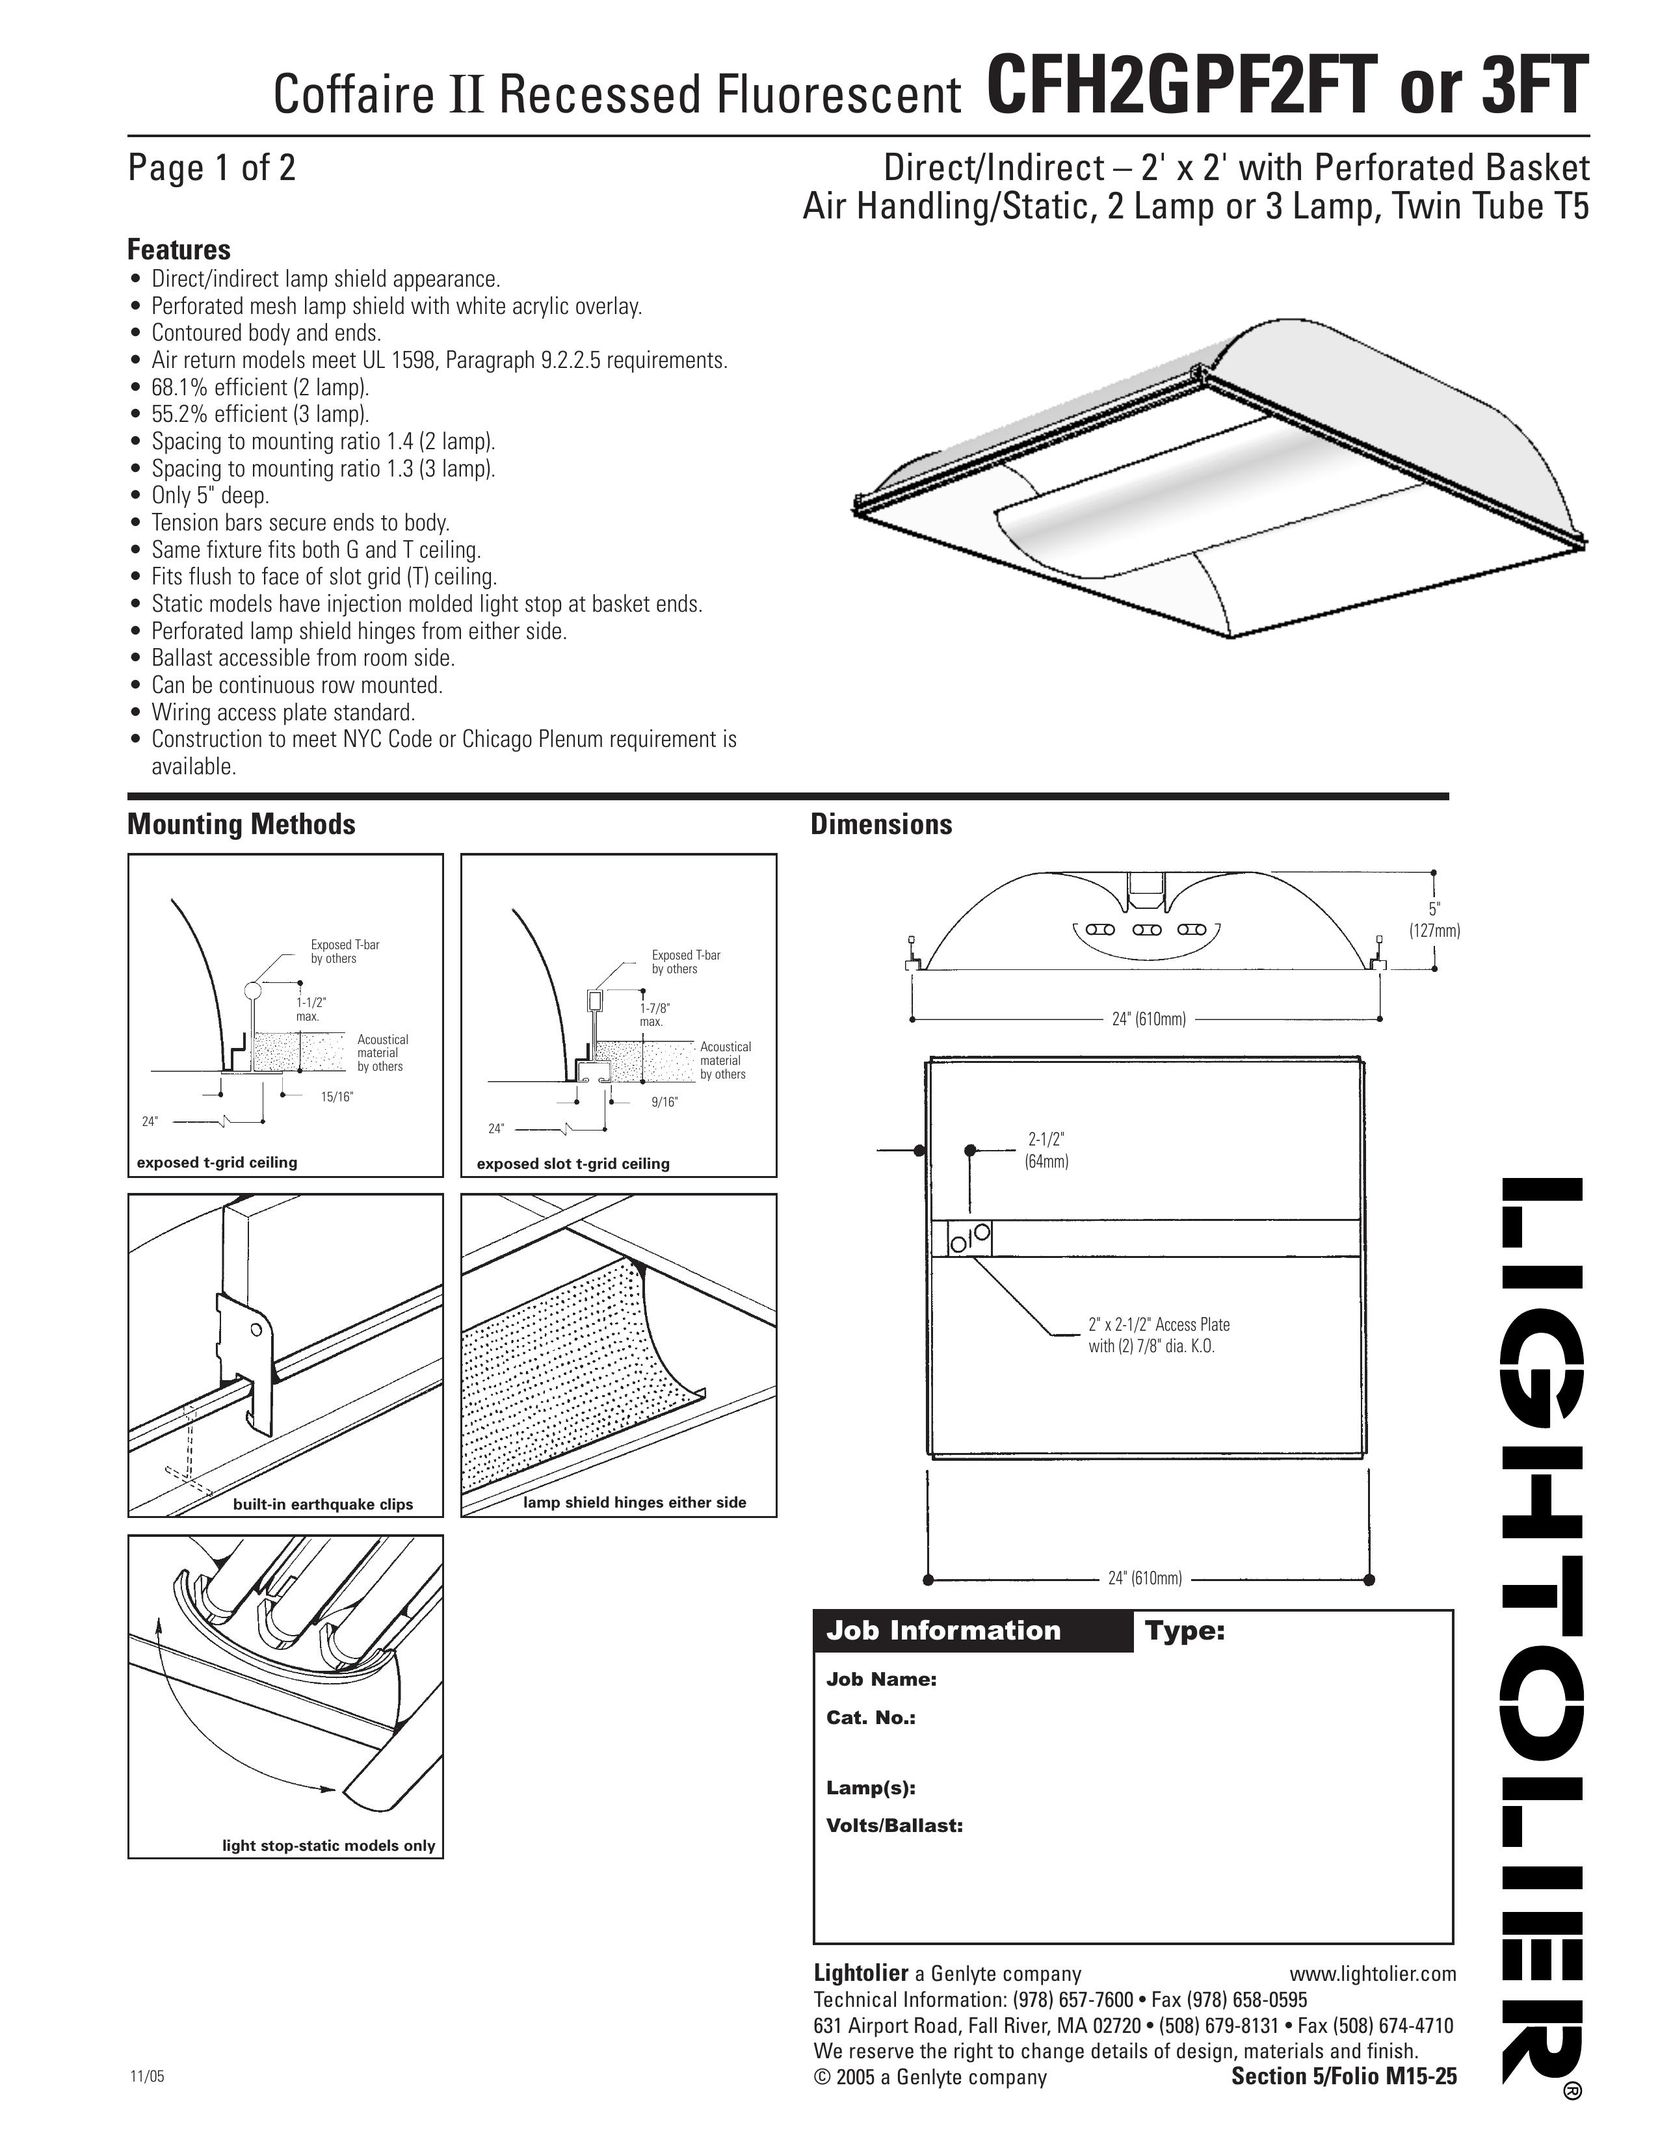 Lightolier CFH2GPF2FT Work Light User Manual